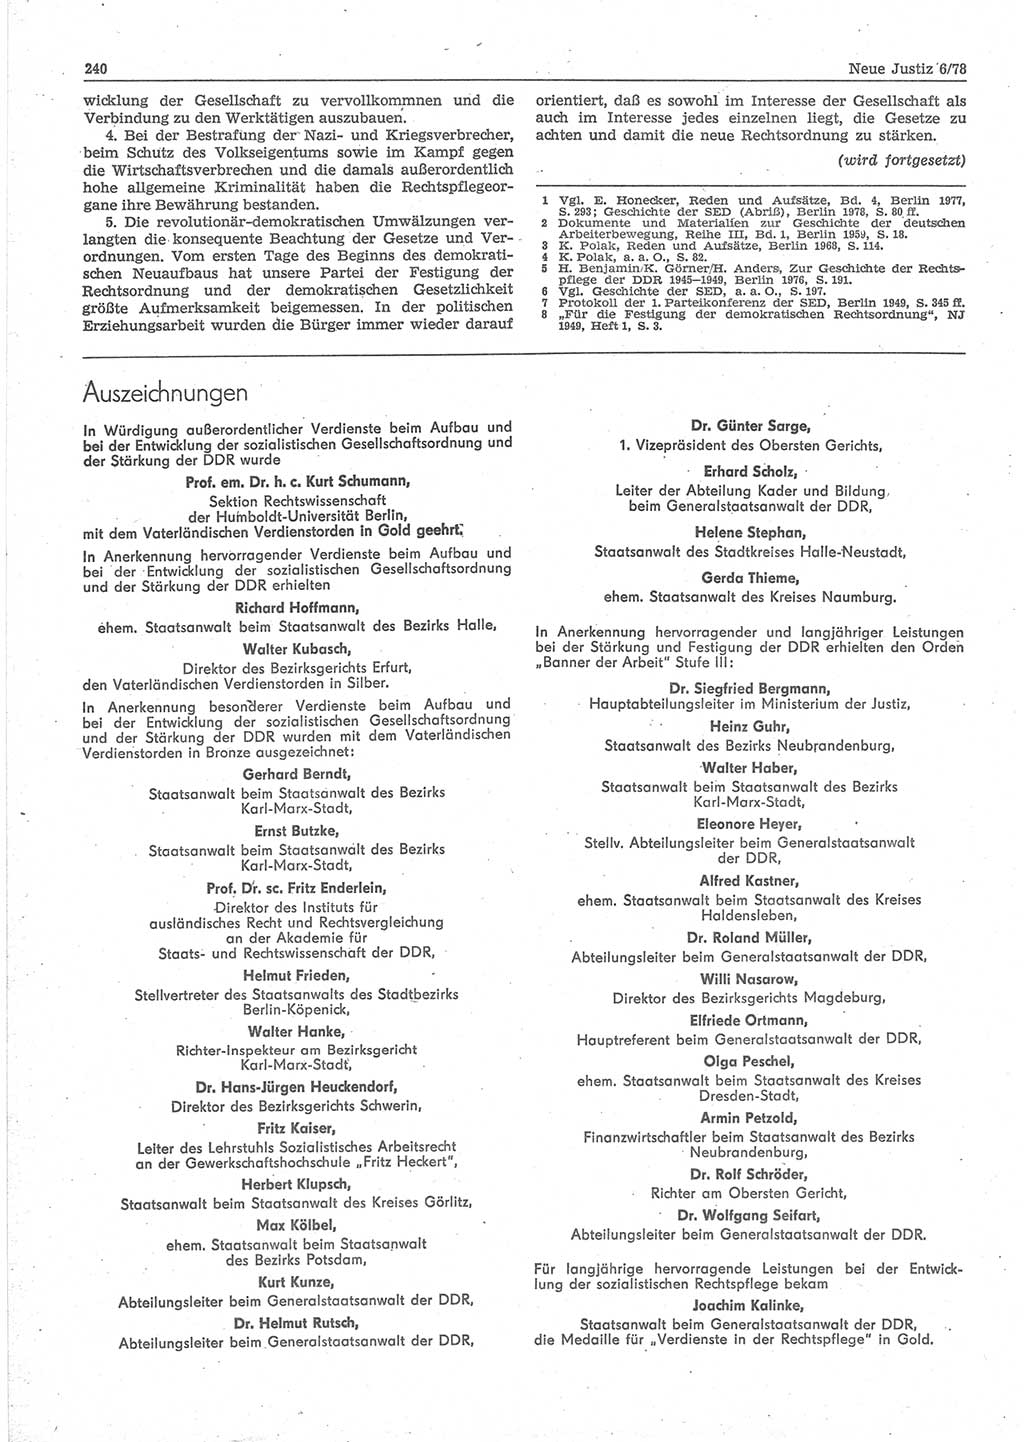 Neue Justiz (NJ), Zeitschrift für sozialistisches Recht und Gesetzlichkeit [Deutsche Demokratische Republik (DDR)], 32. Jahrgang 1978, Seite 240 (NJ DDR 1978, S. 240)